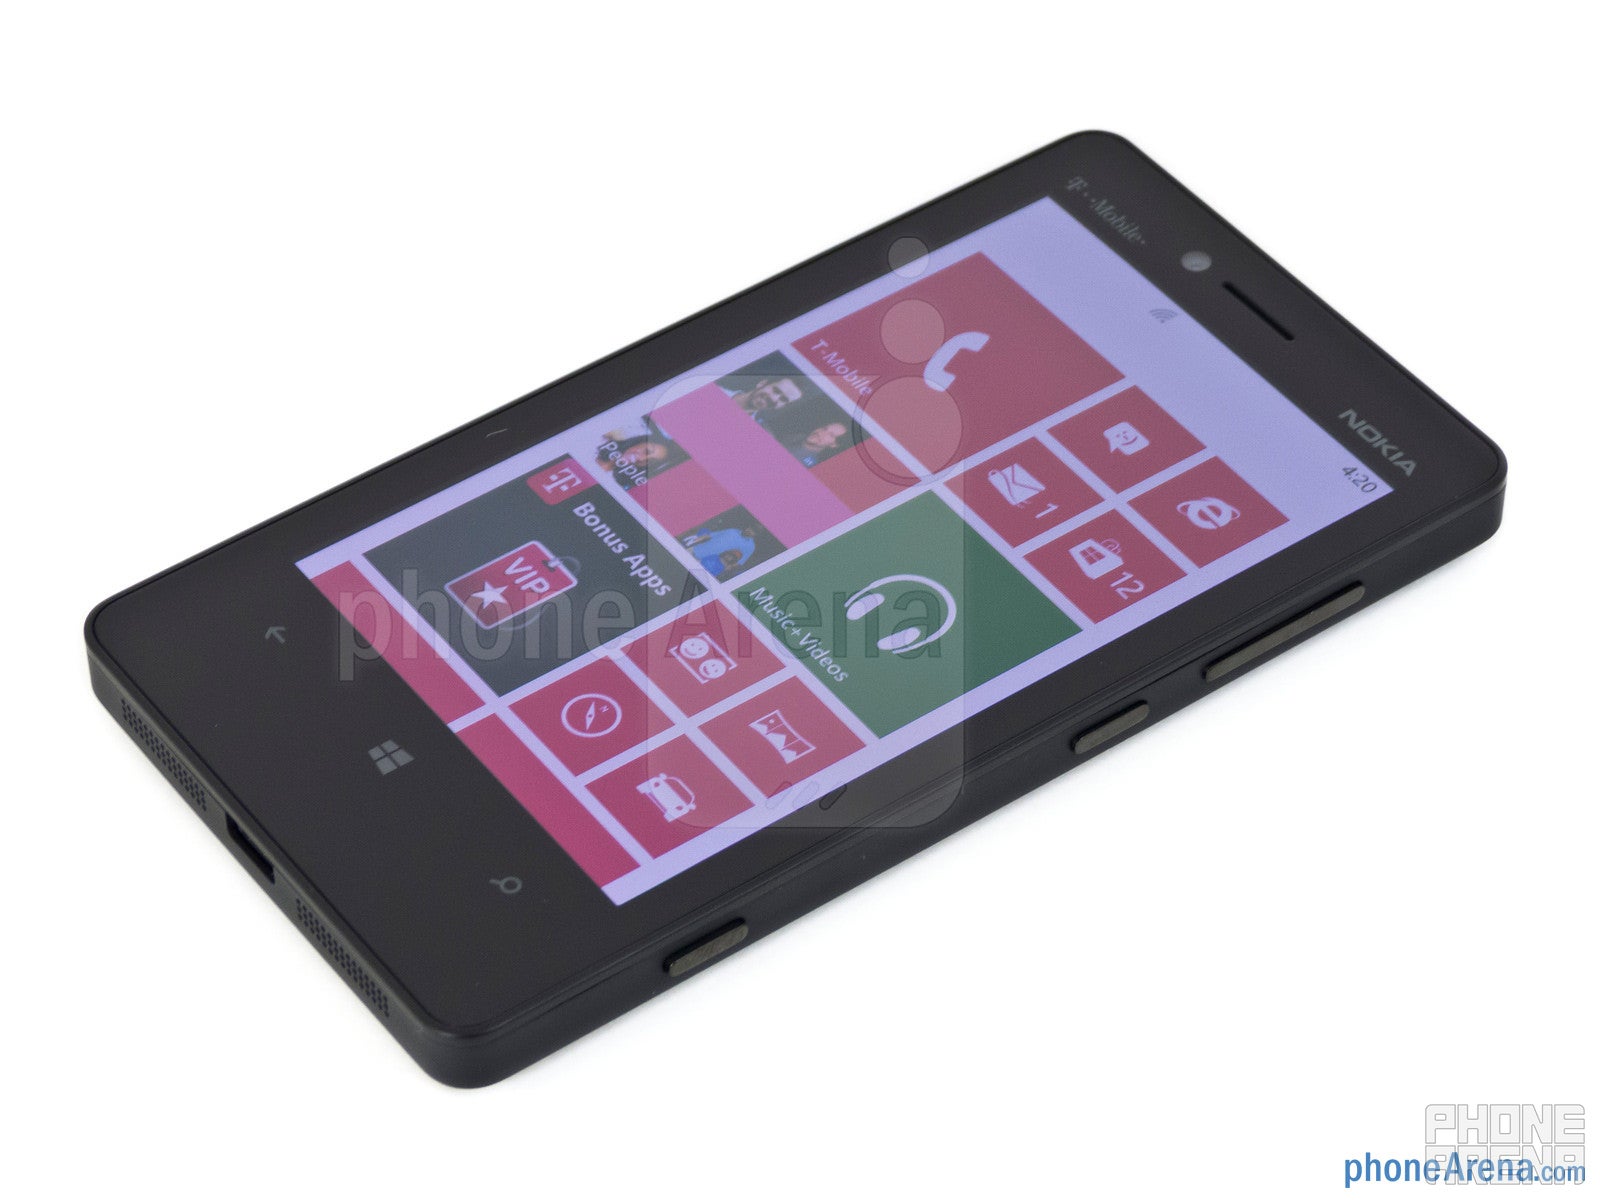 Nokia Lumia 810 Review